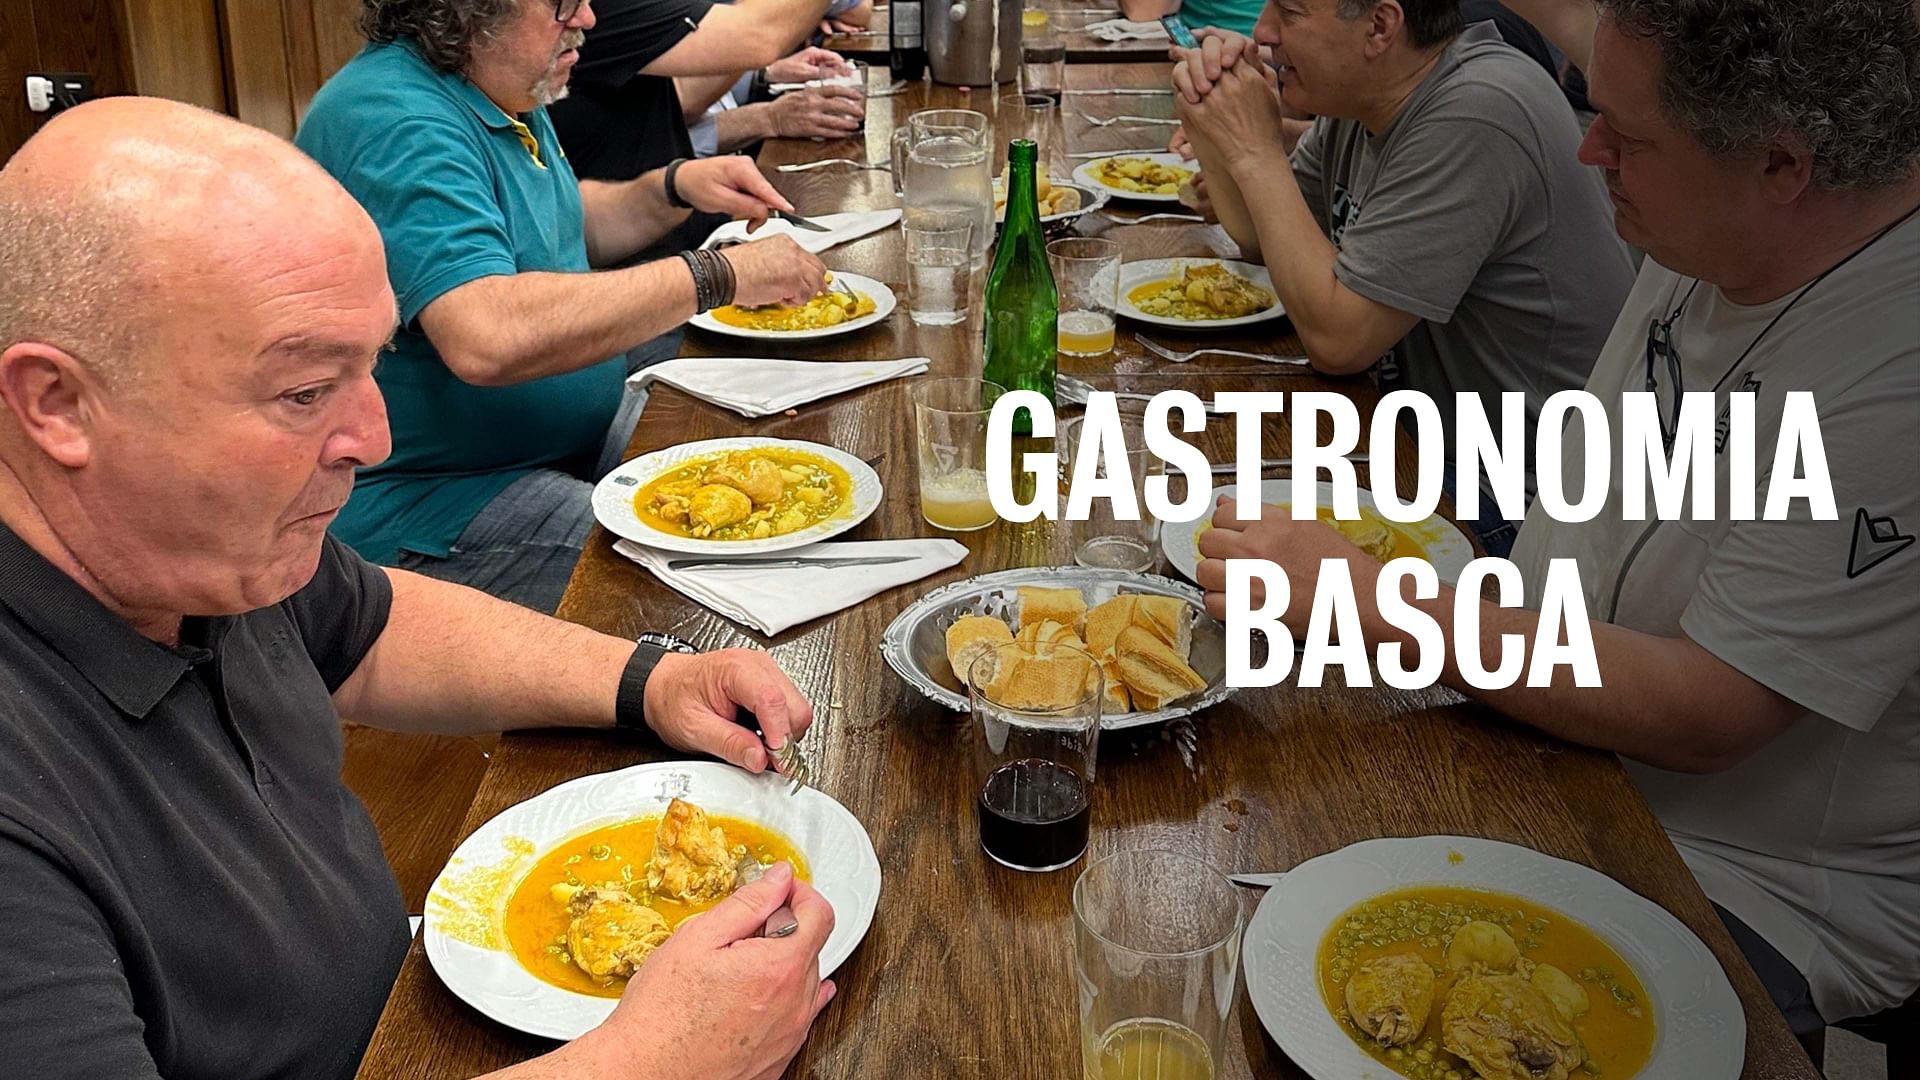 Re: sguardi sulla società - Le "società gastronomiche" dei Paesi Baschi